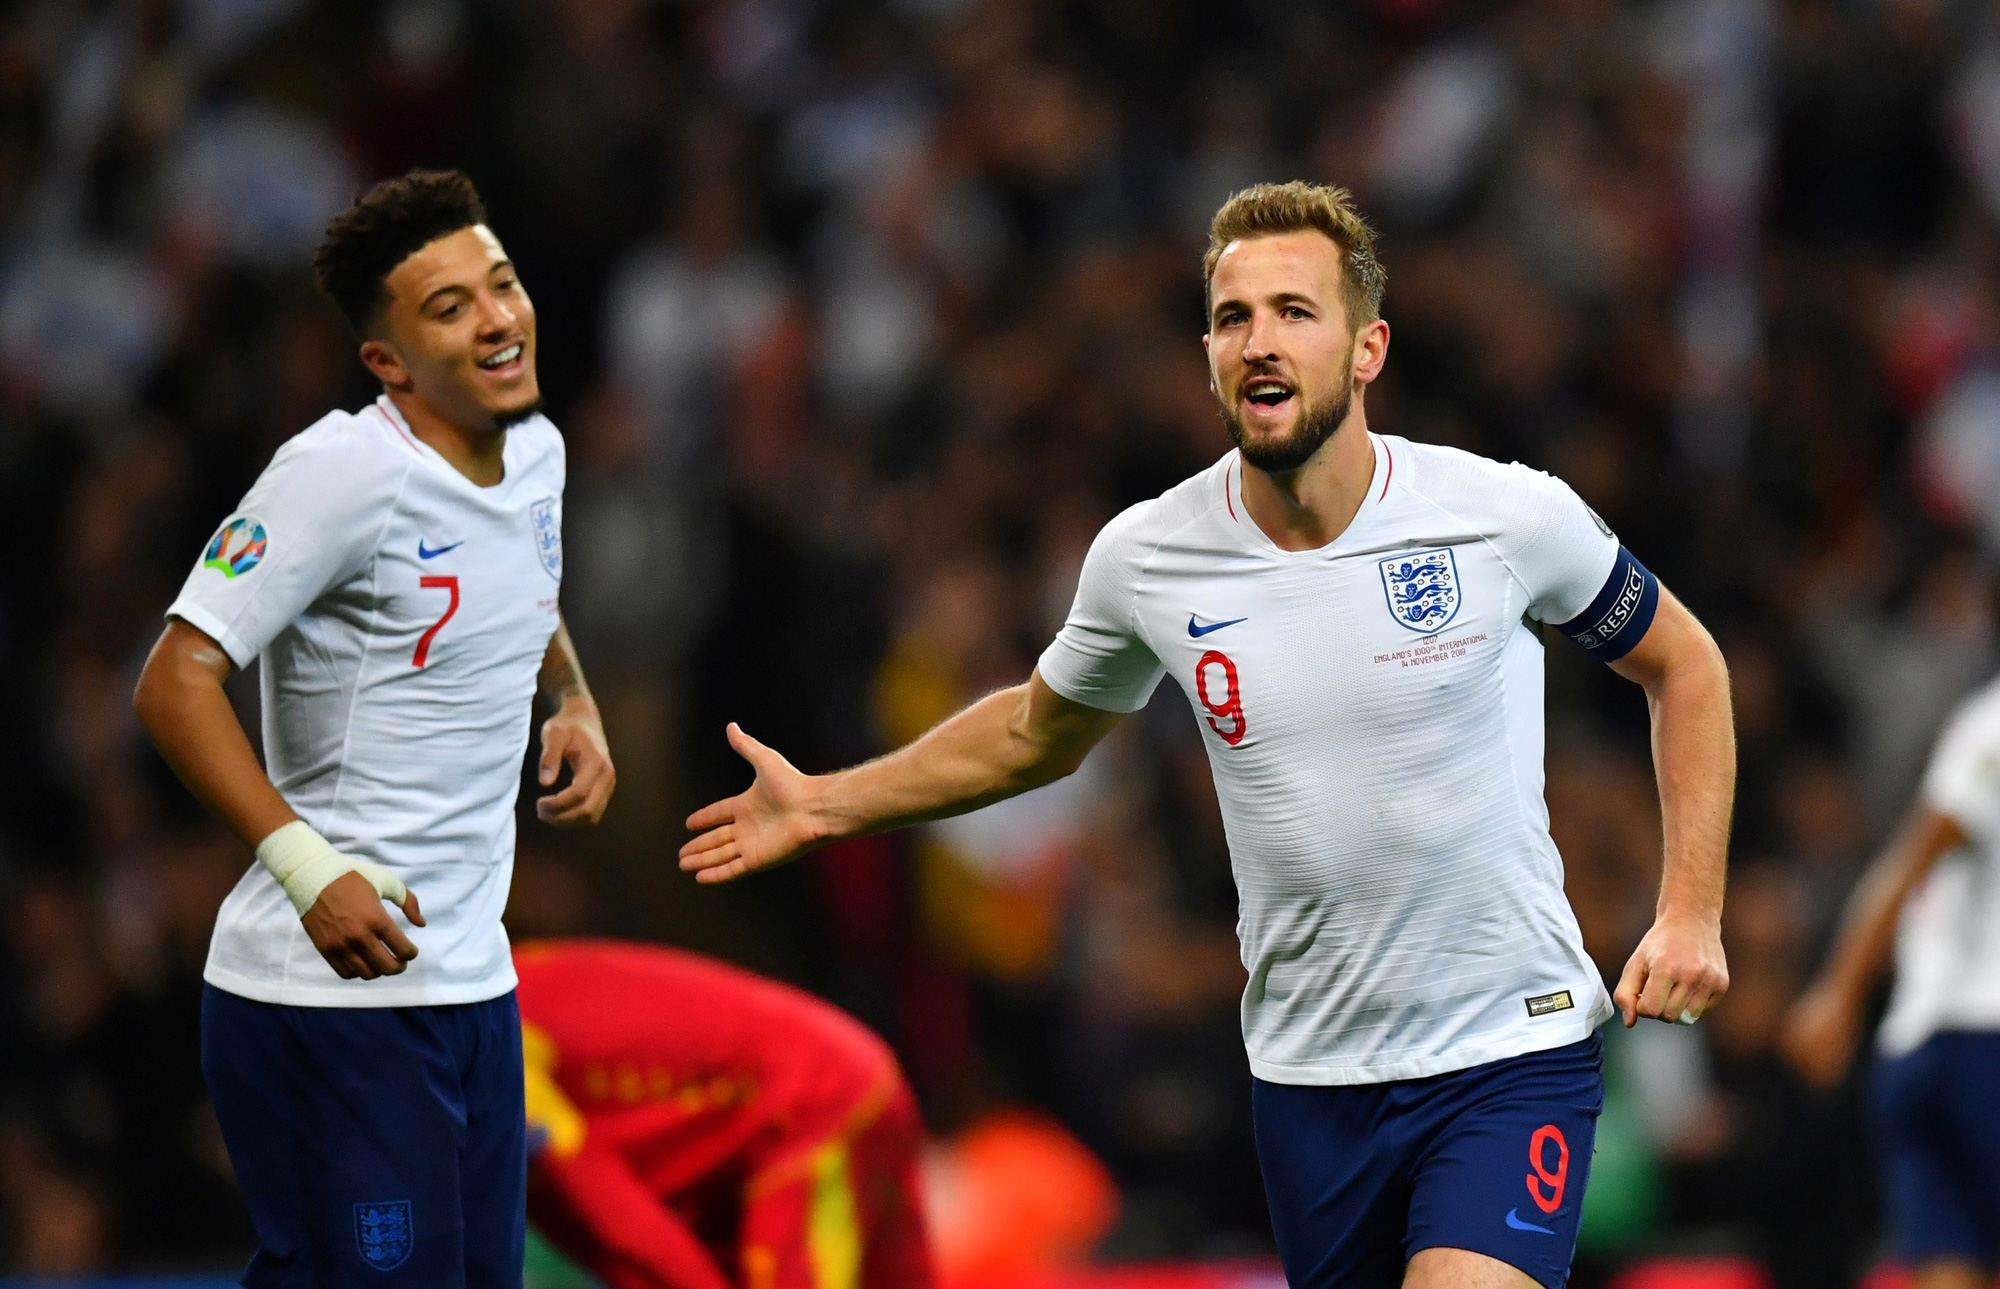 Anh vs Đức – Soi kèo nhà cái bóng đá 23h00 ngày 29/06/2021 – Vòng 1/8 Euro 2021